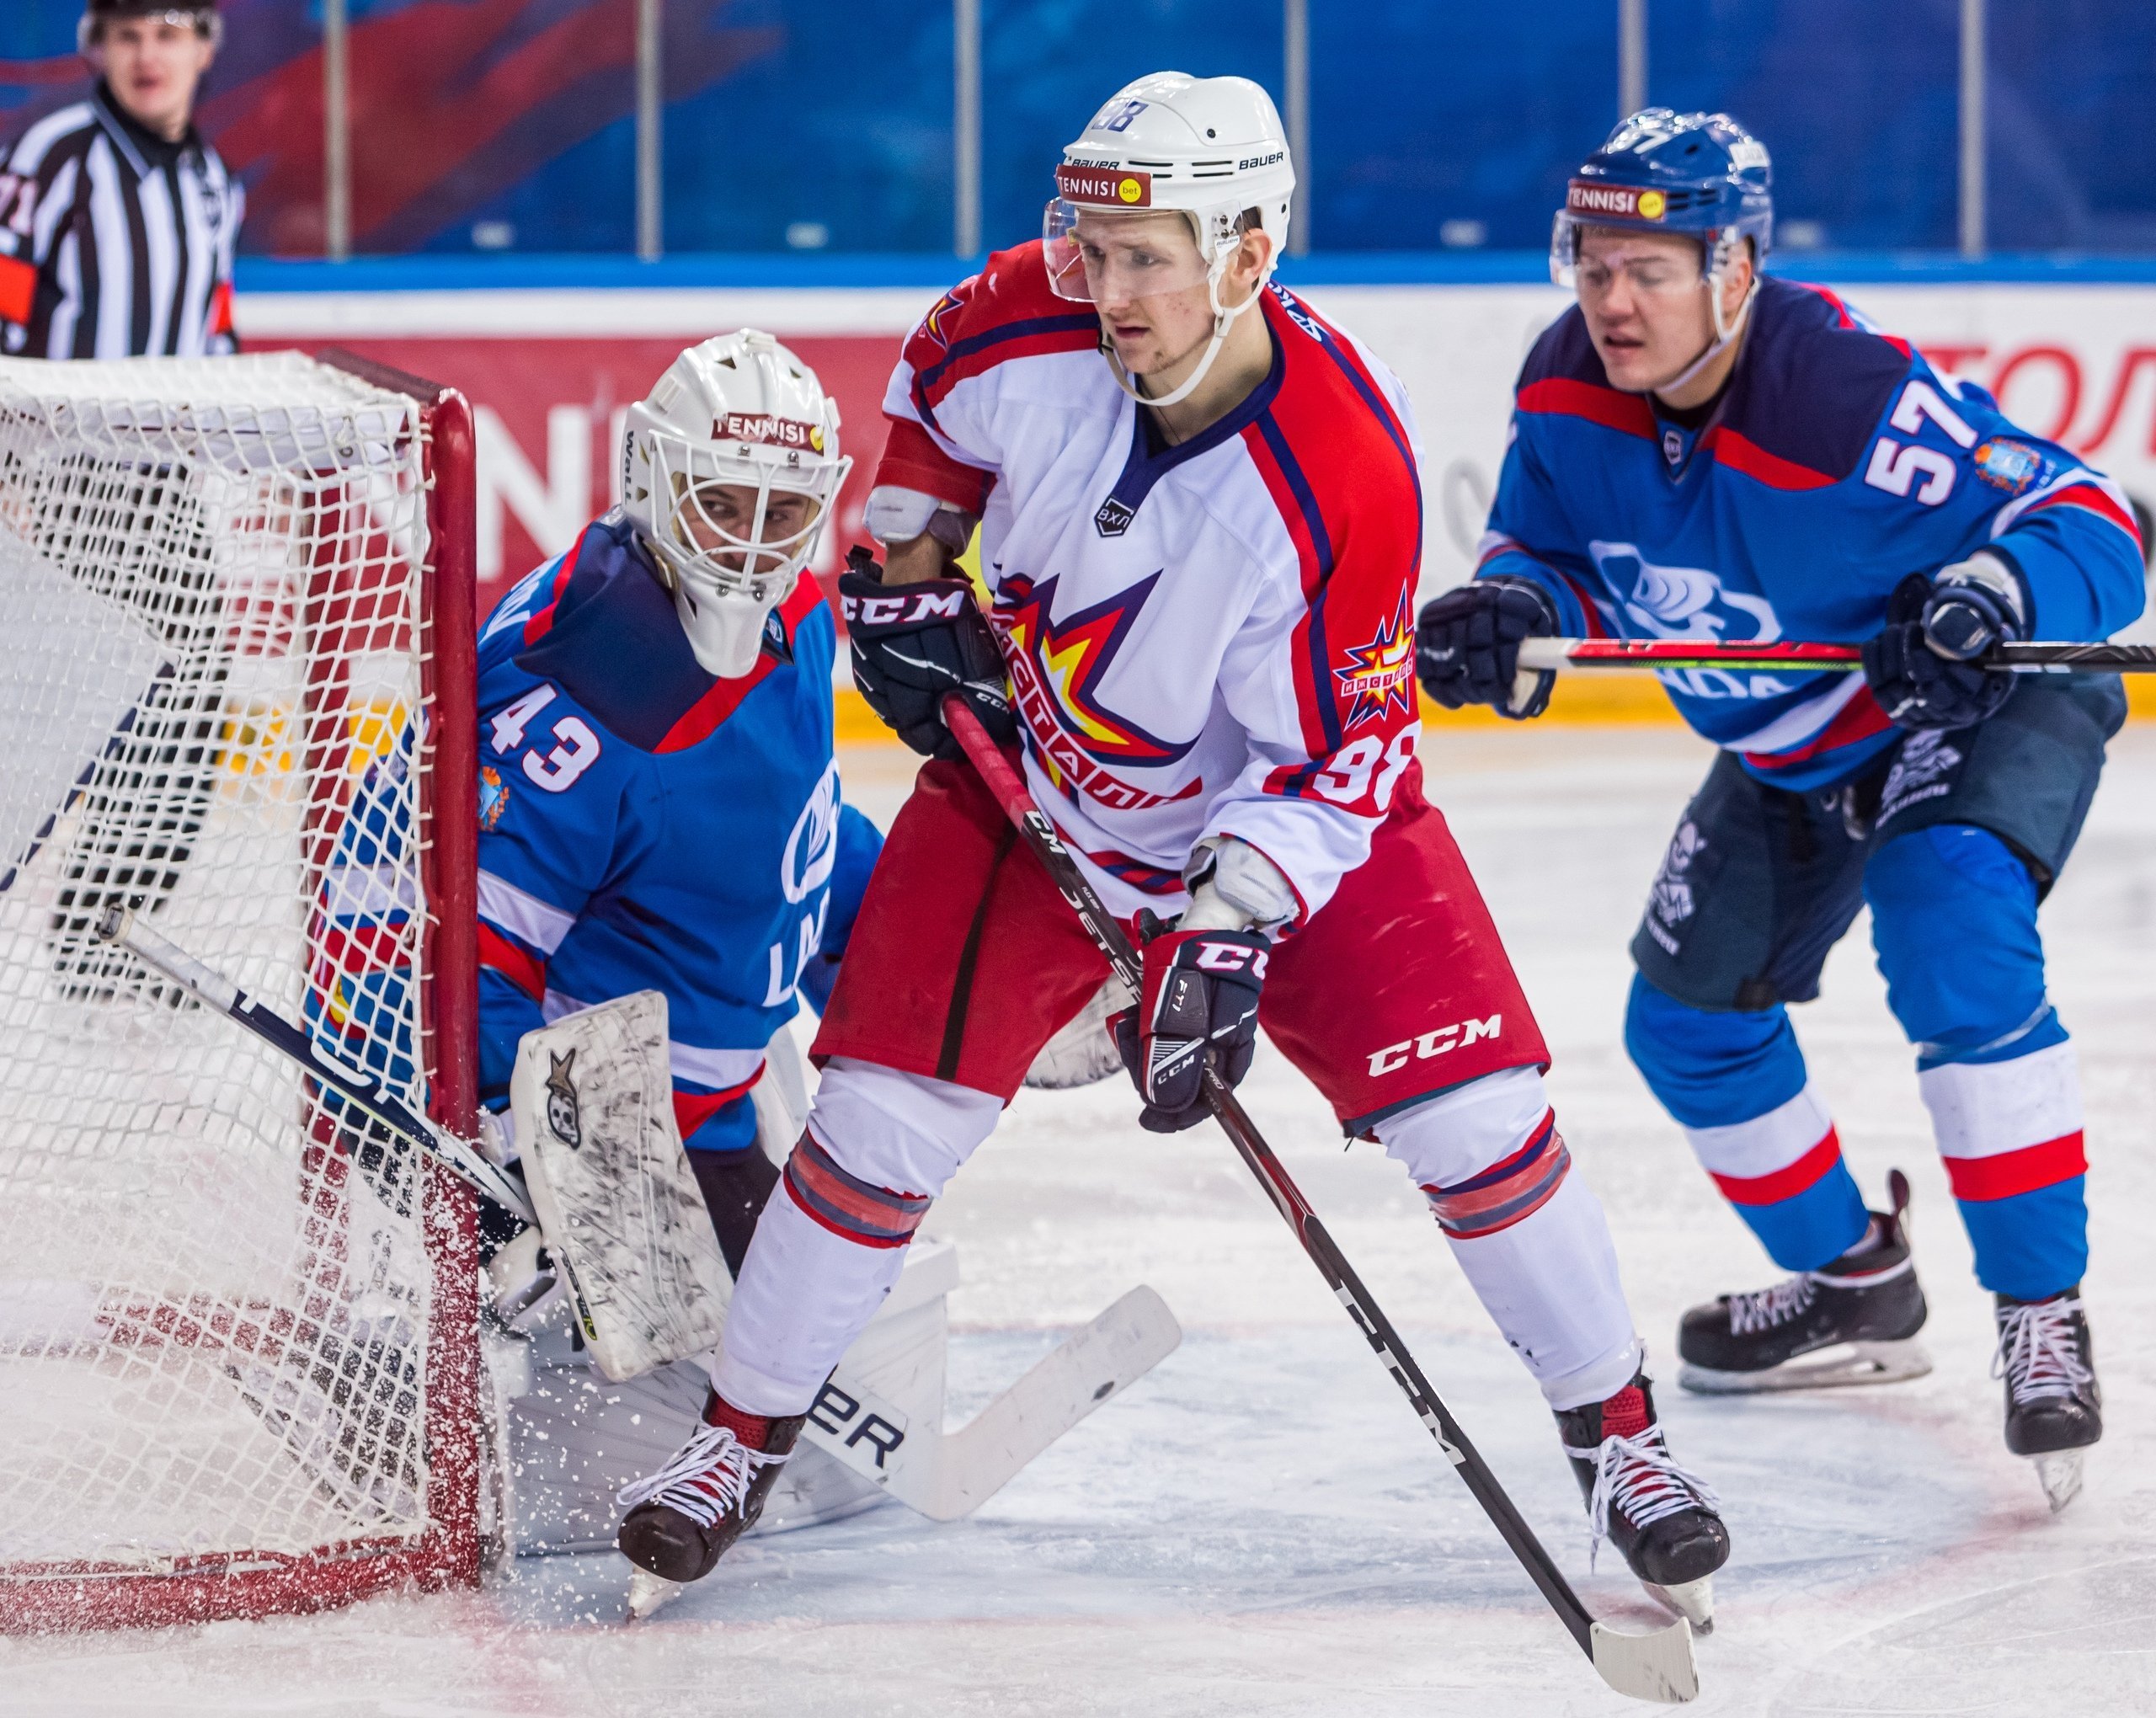 

Хоккеисты «Ижстали» обыграли команду «Лада» из Тольятти

